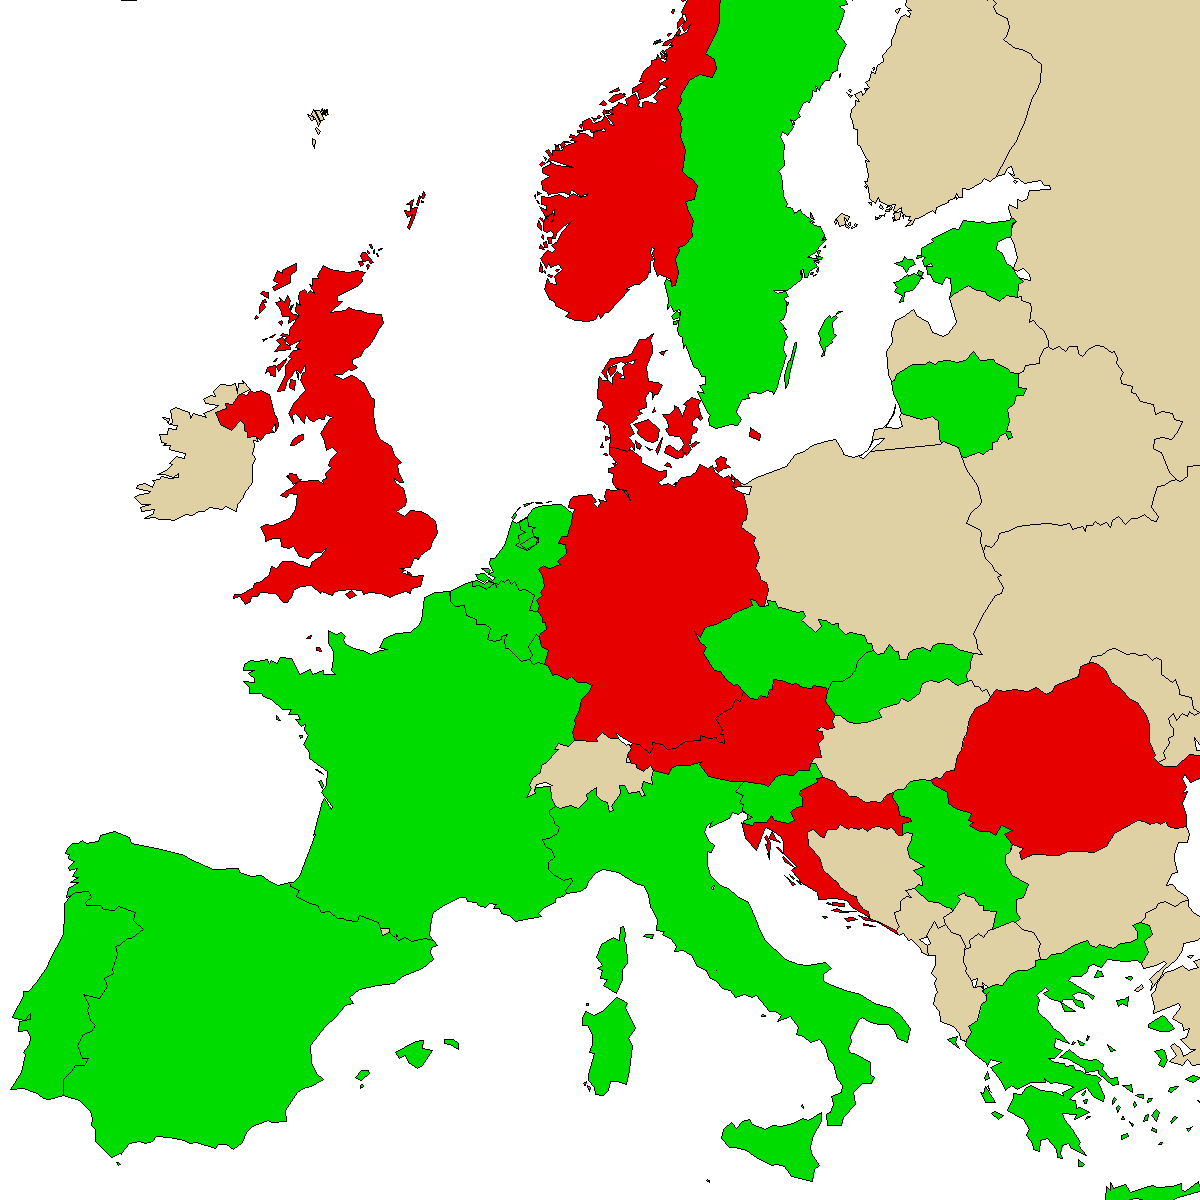 Mapa de informações legais para nosso produto 3MMA, verde são países sem proibição, vermelho com proibição, cinza é desconhecido